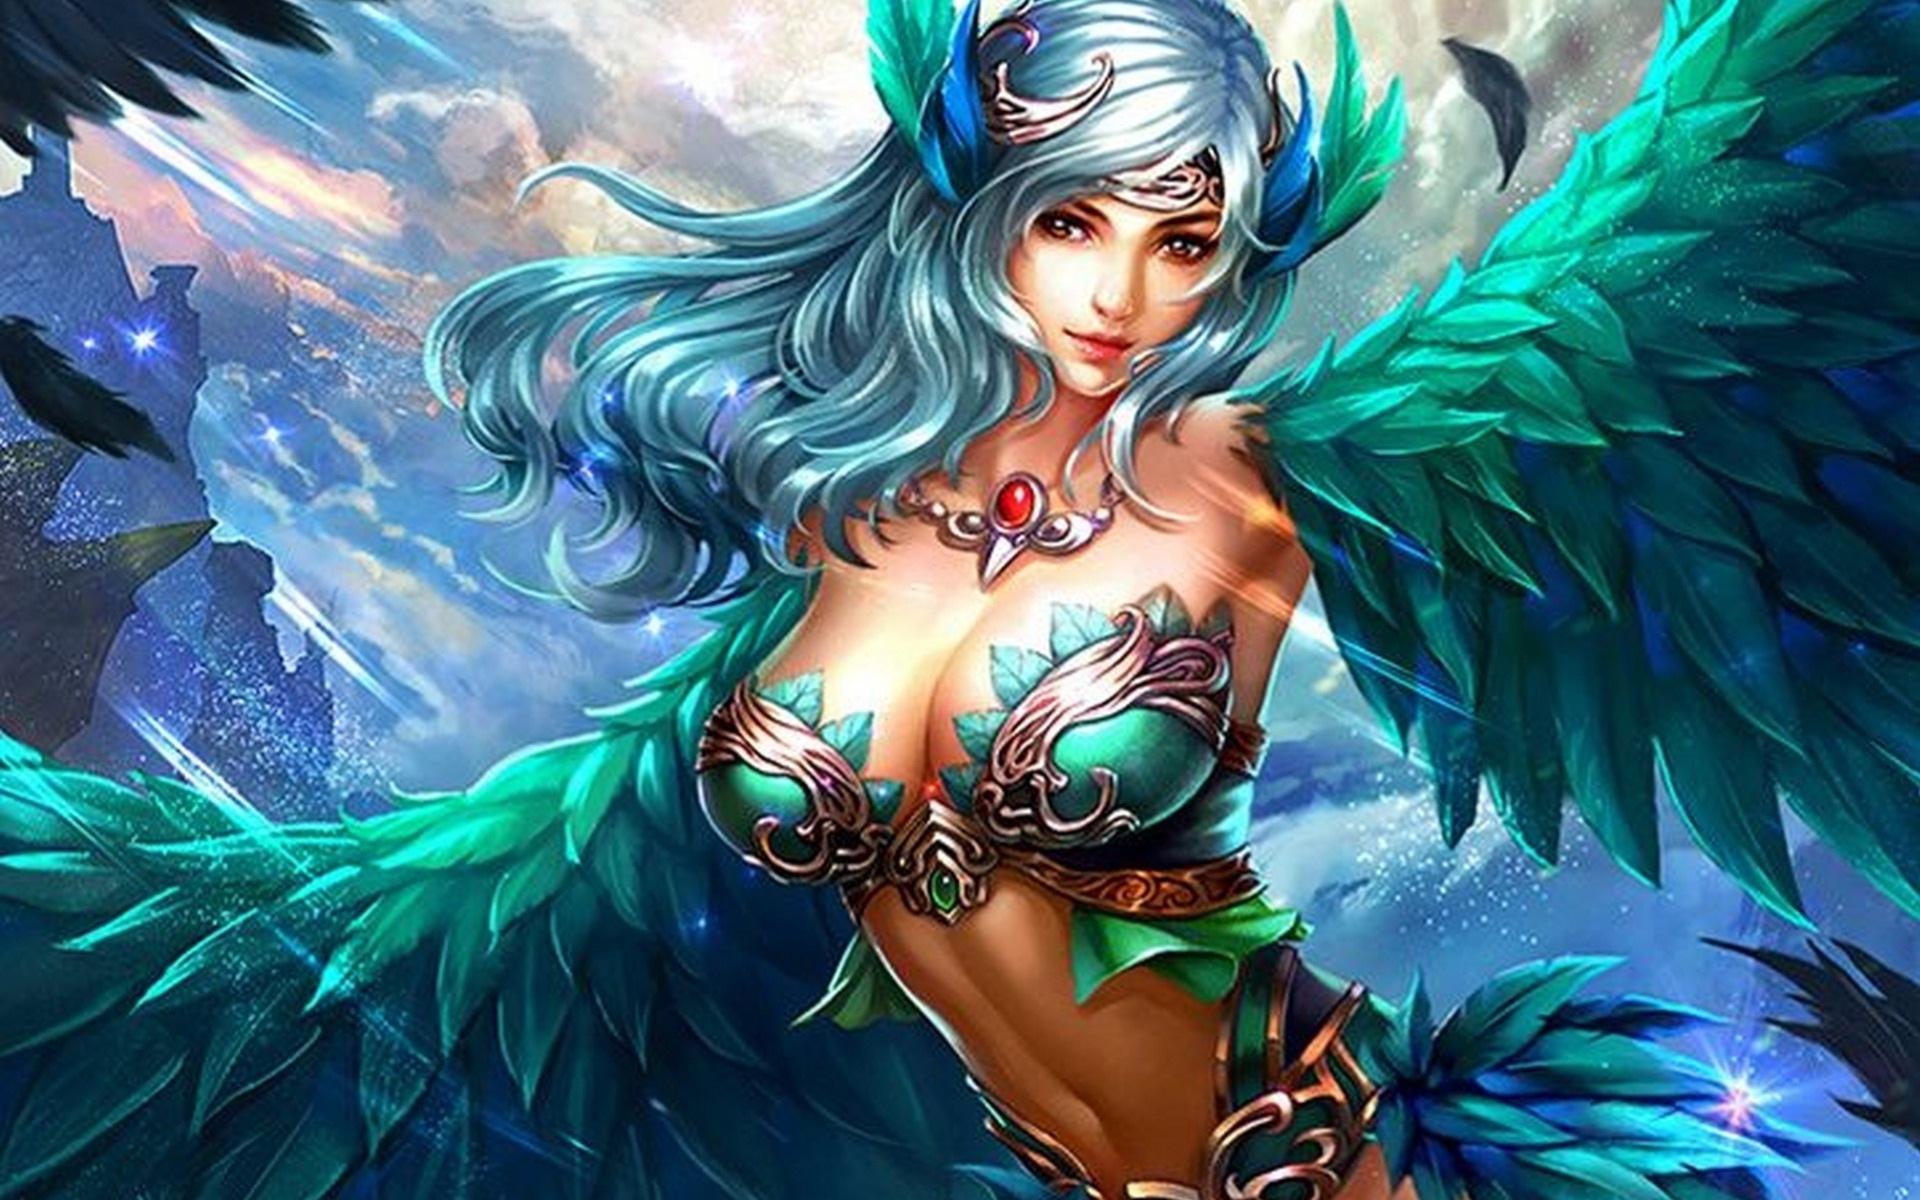 Hot Fantasy Girl Wallpaper Green Hair Warriors Female